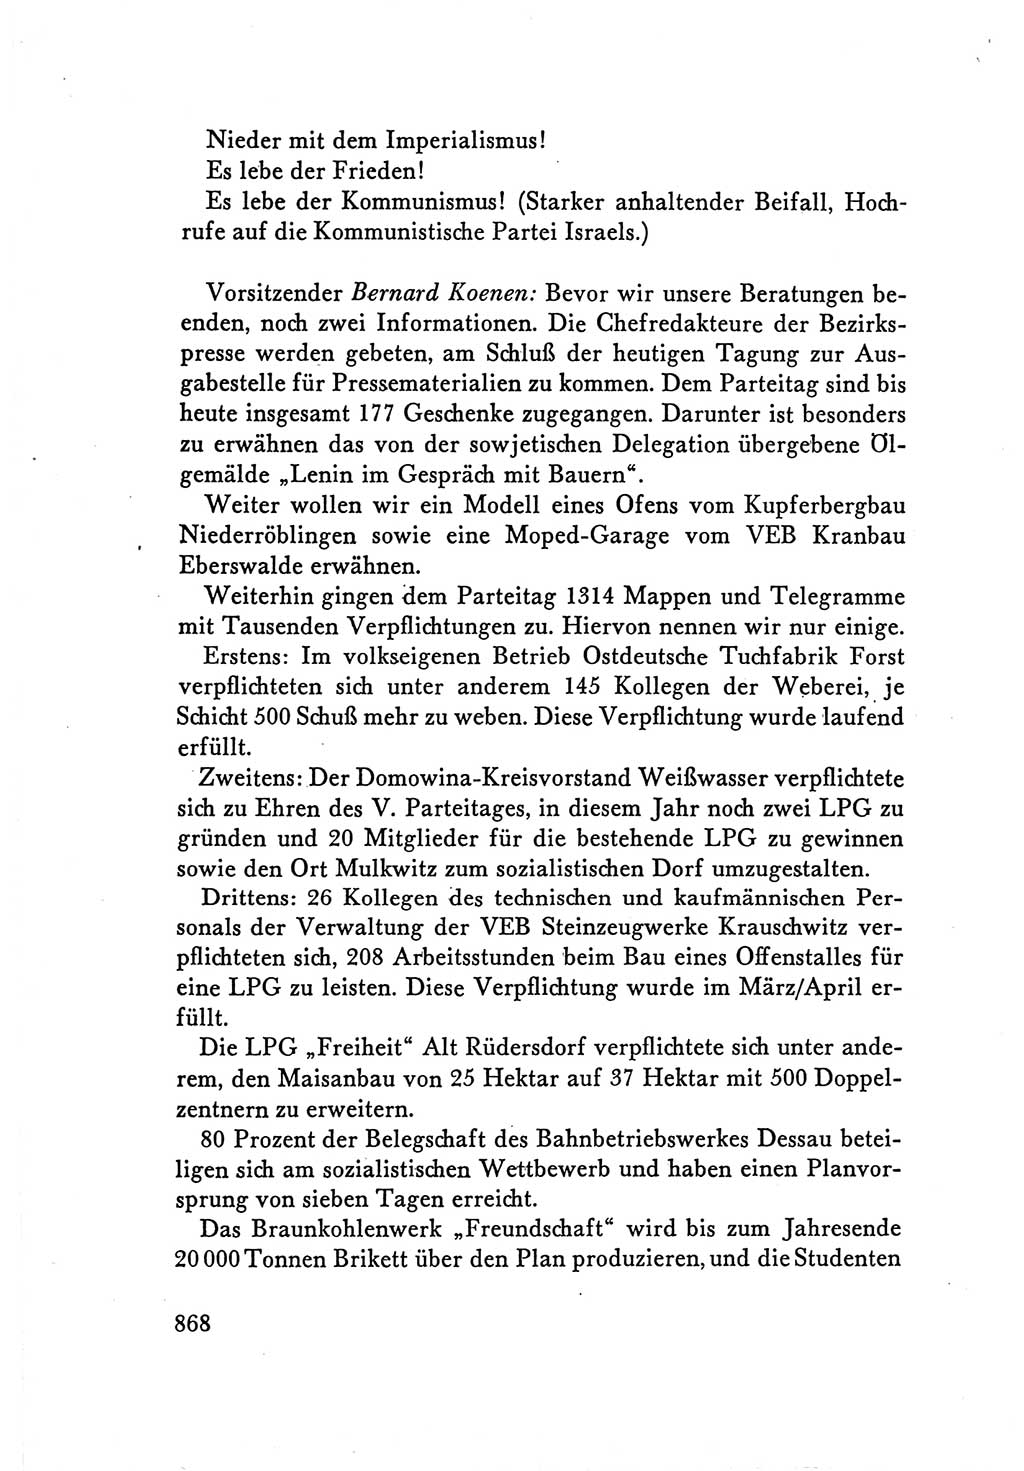 Protokoll der Verhandlungen des Ⅴ. Parteitages der Sozialistischen Einheitspartei Deutschlands (SED) [Deutsche Demokratische Republik (DDR)] 1958, Seite 868